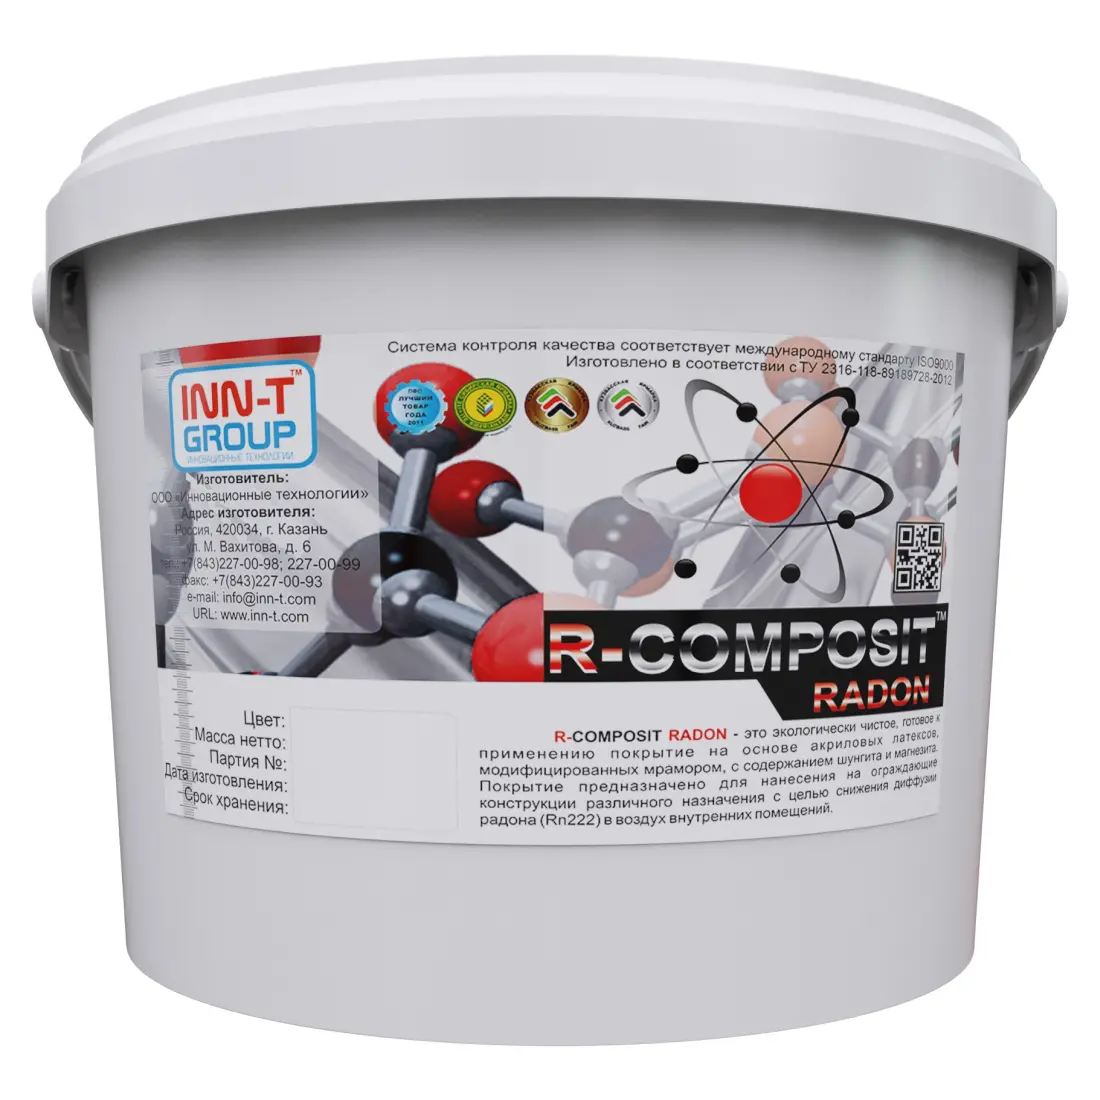 Противорадоновая защита R-COMPOSIT RADON защита от радона